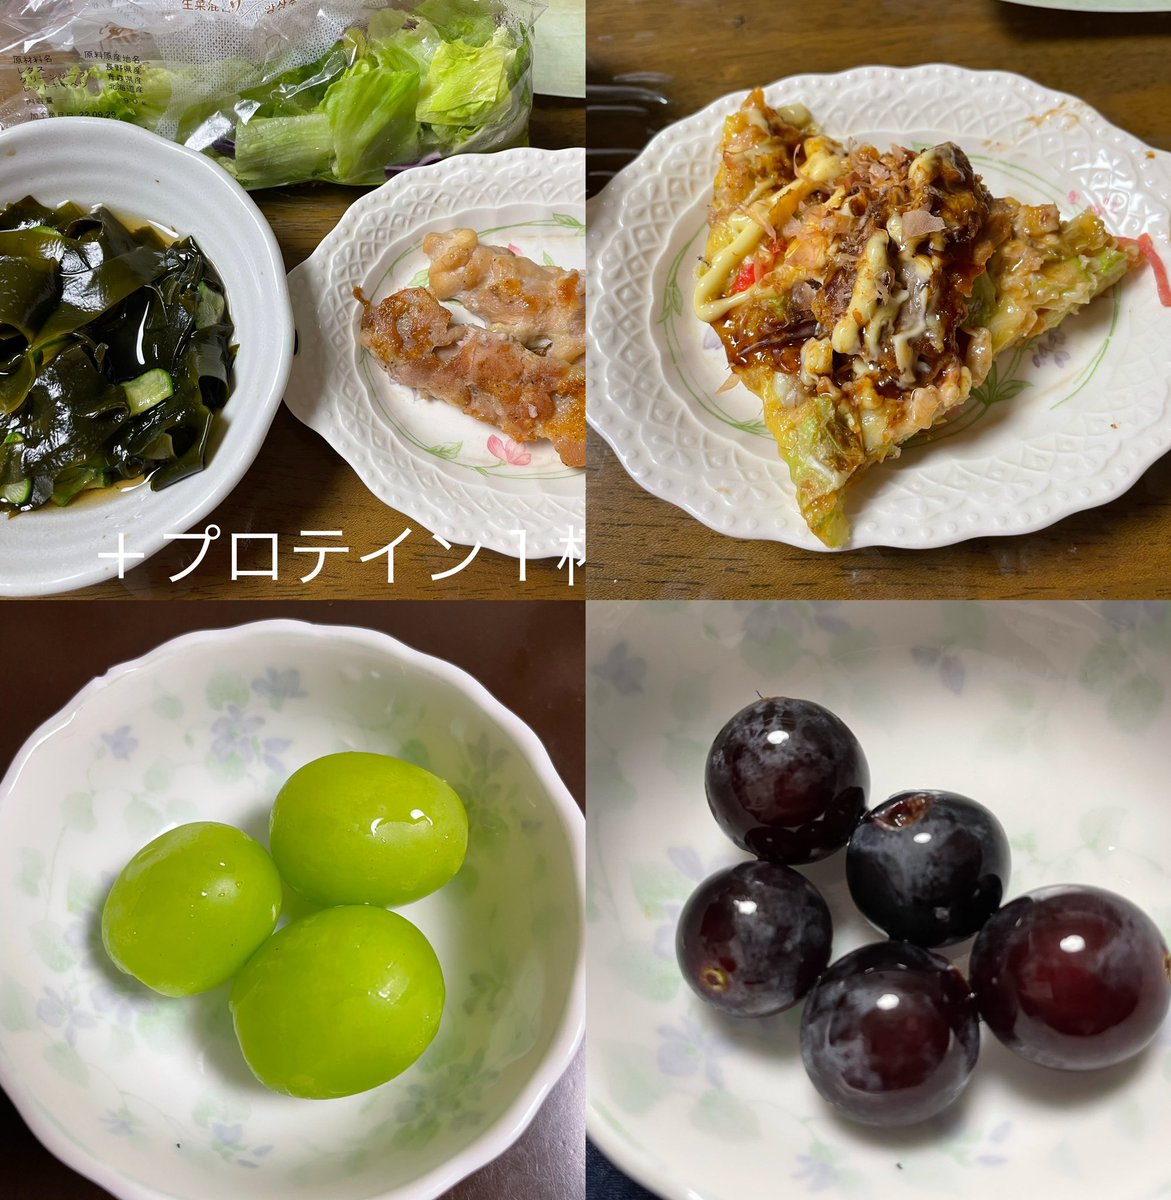 test ツイッターメディア - 2022/10/1
朝・昼・夜
間食 : 奥州ポテト https://t.co/tvD66po5aO